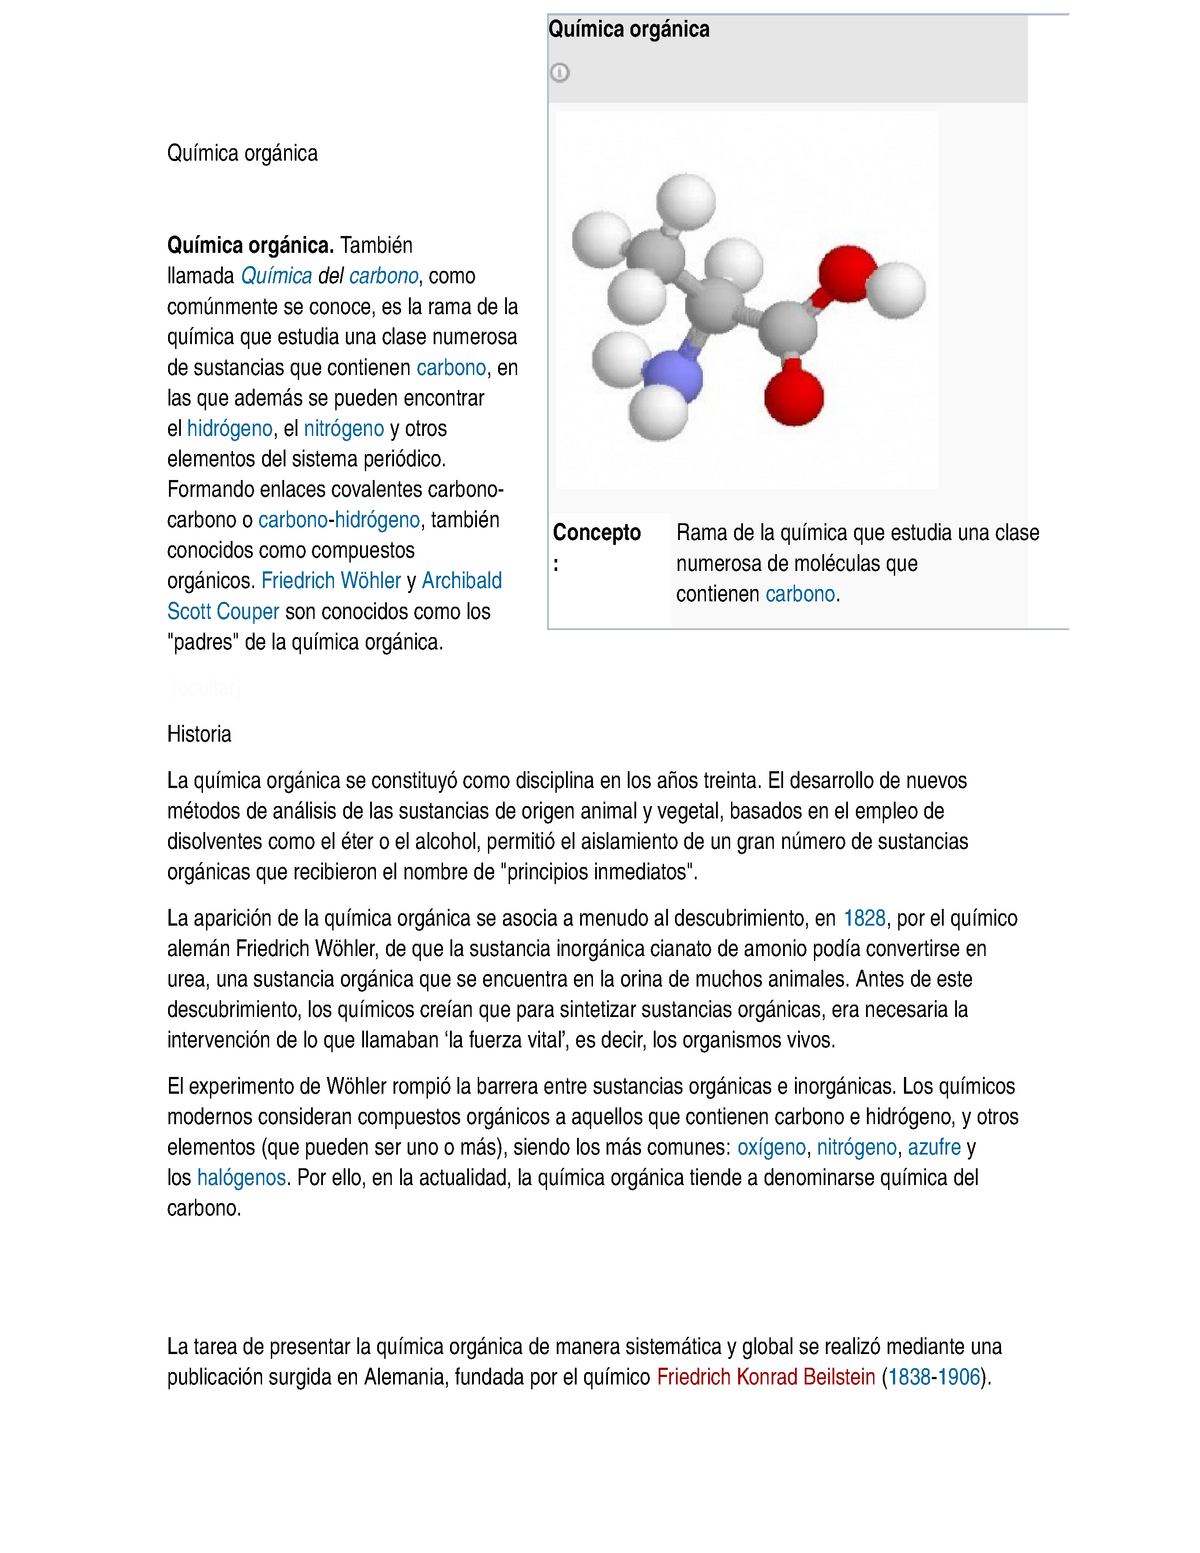 Quimica Organica Pequeno Informe De Lo Que Es Quimica Organica Studocu